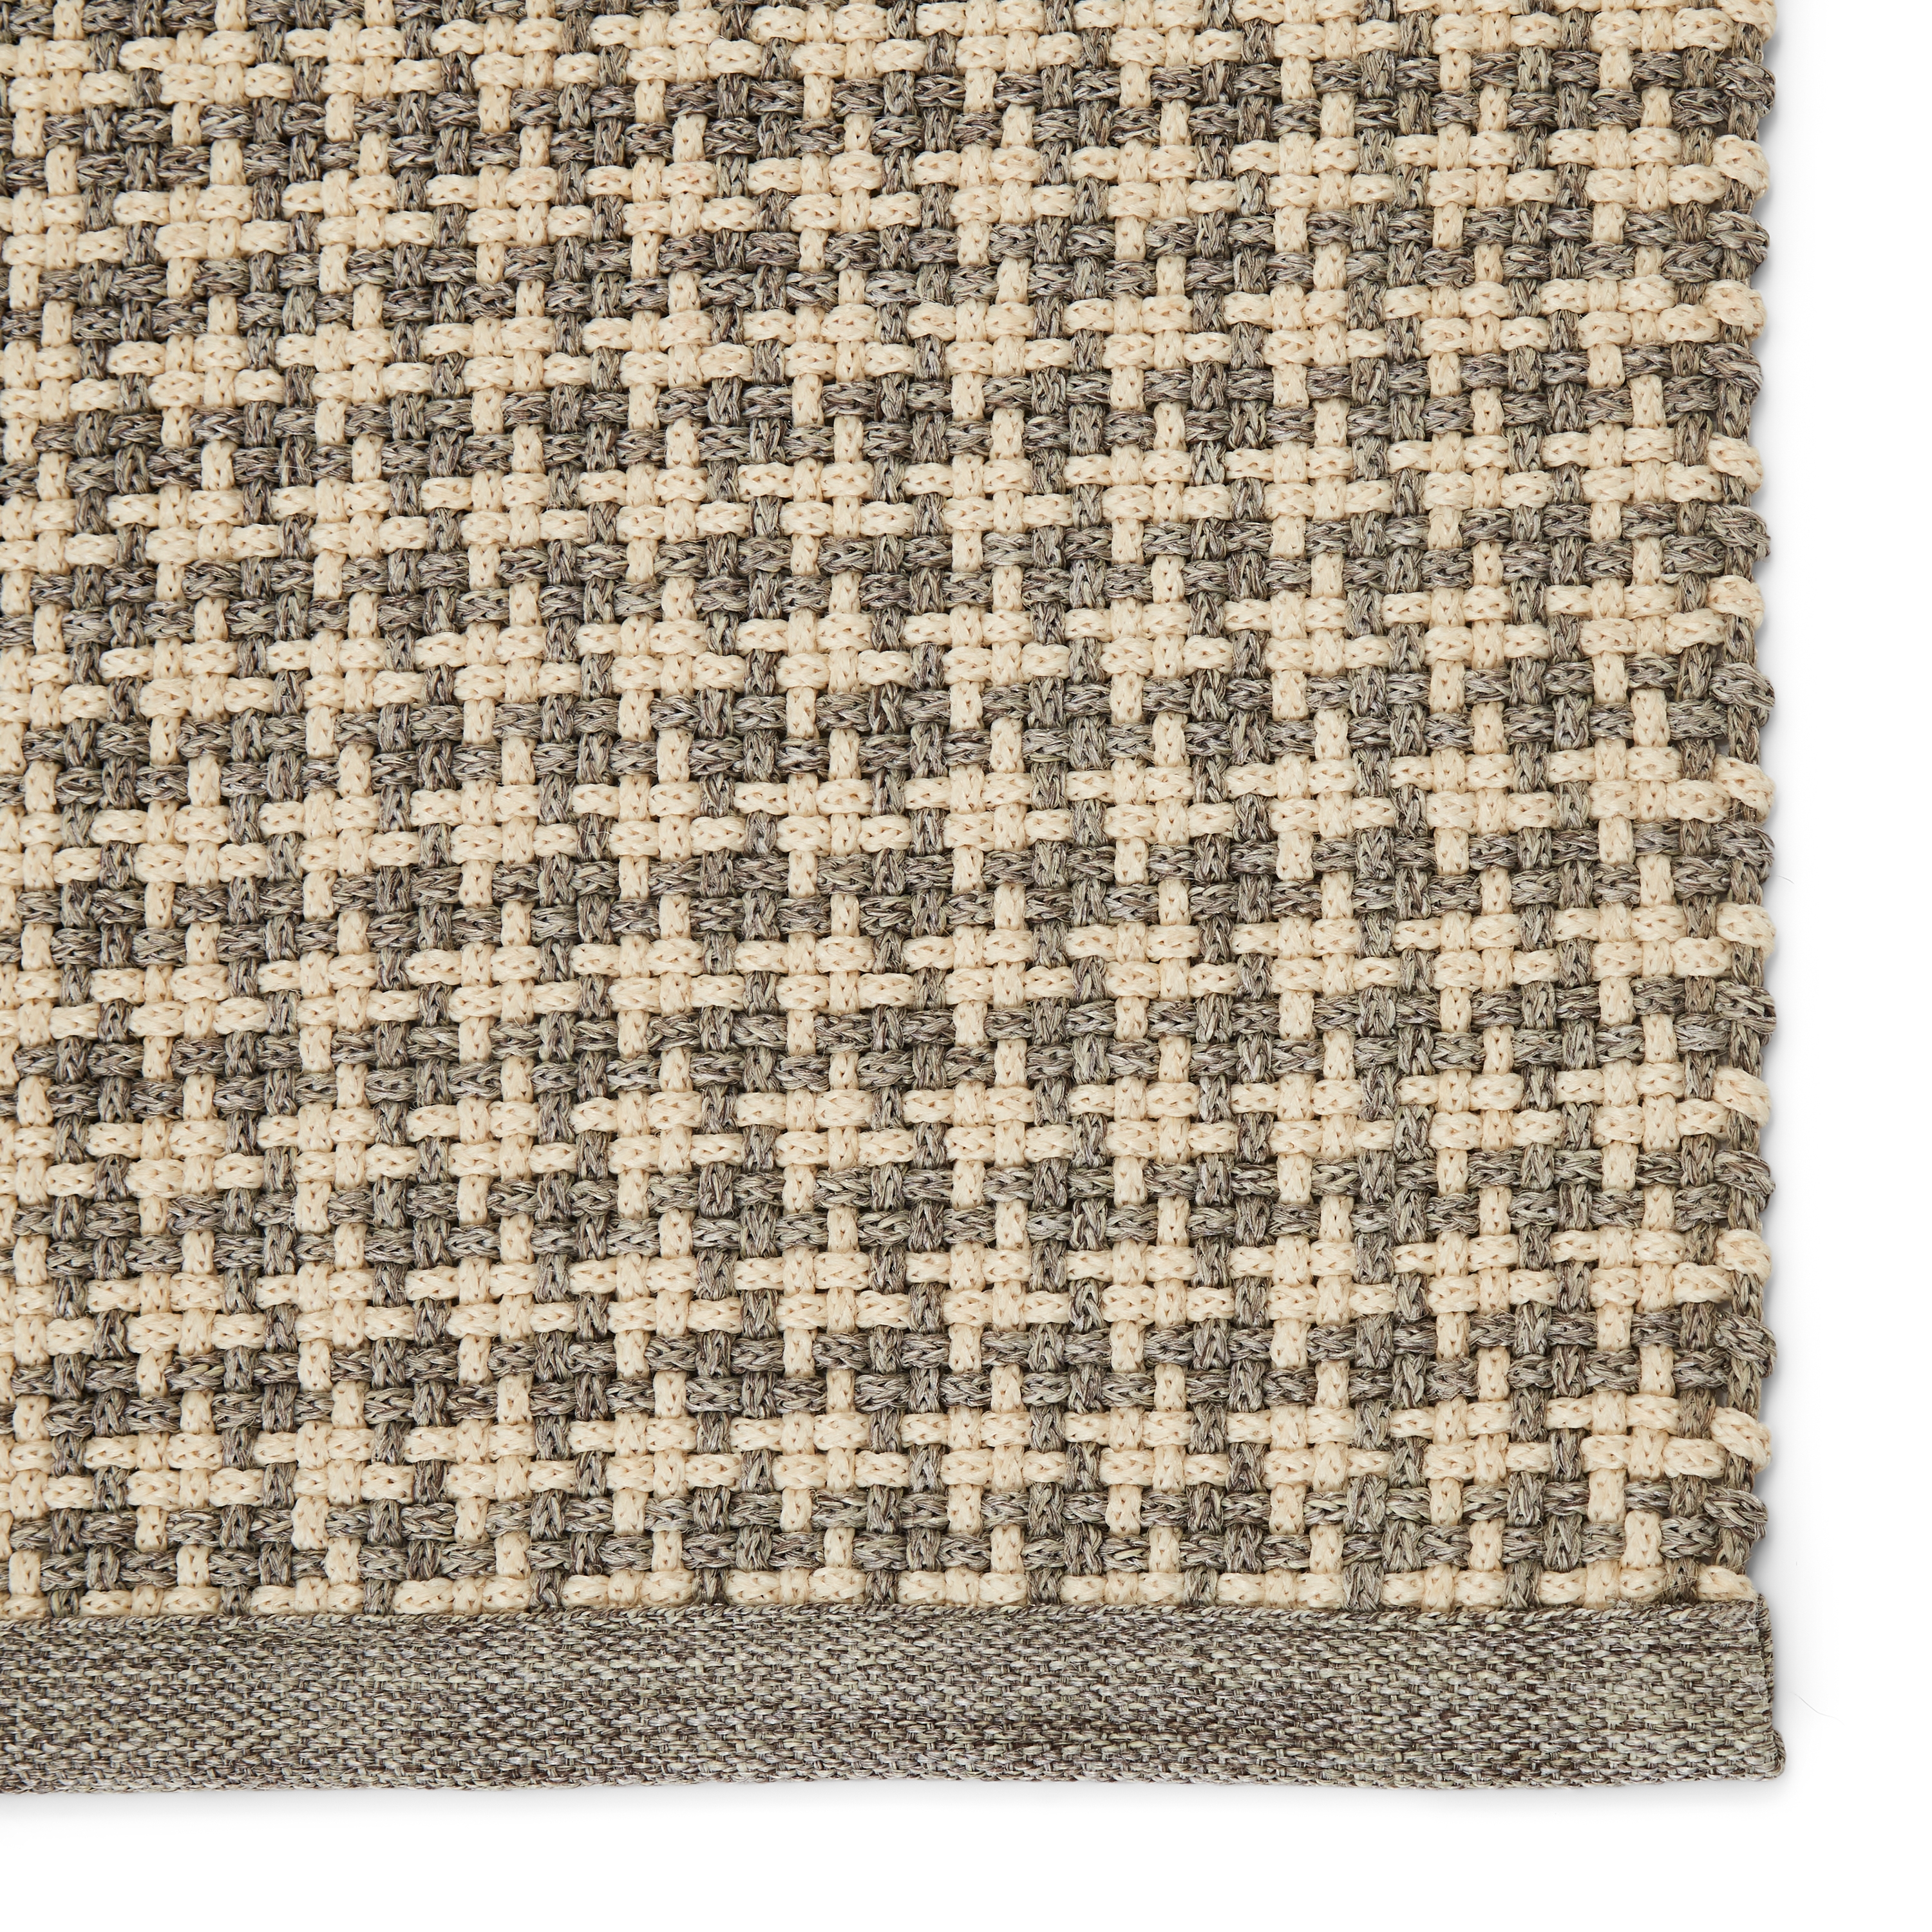 Houndz Indoor/ Outdoor Trellis, Light Gray & Cream, 5' x 8' - Image 3